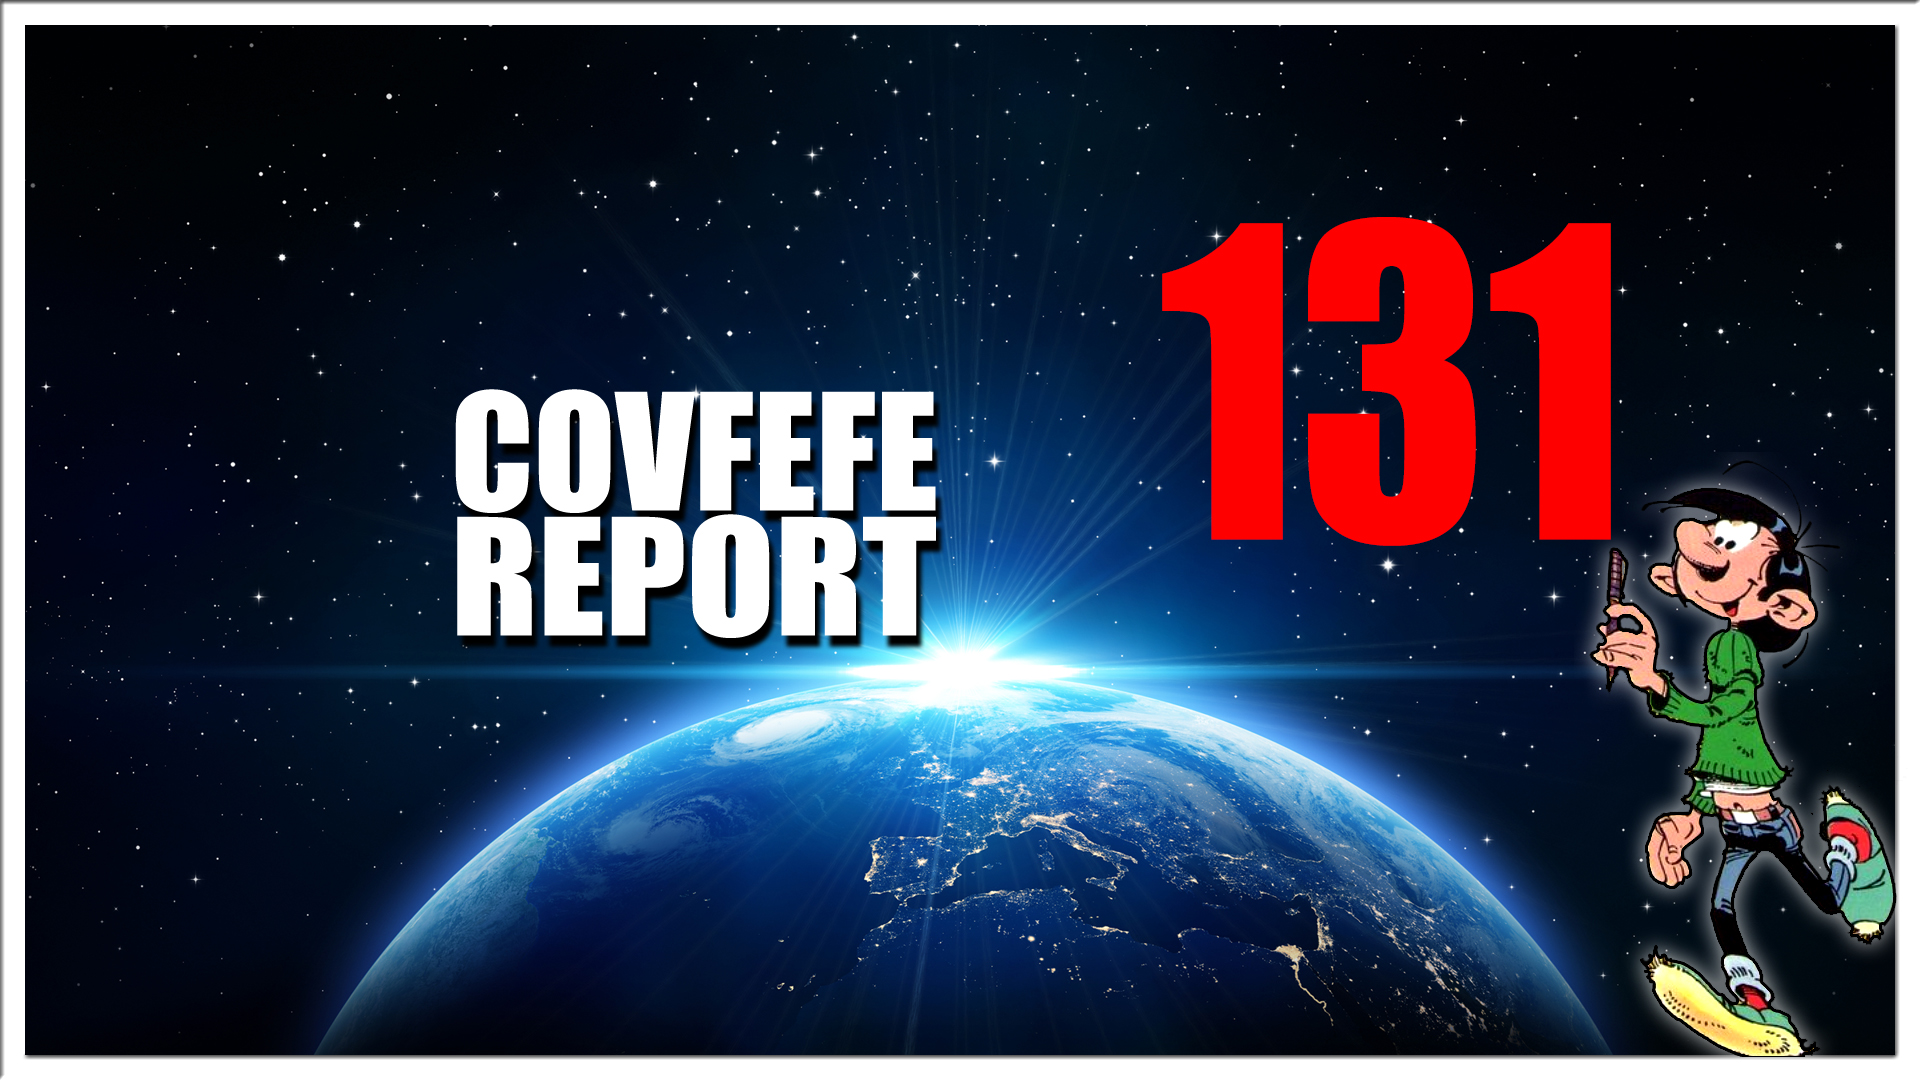 Covfefe Report 131. Er zitten noten in de notenmix. Ik herhaal. Er zitten noten in de notenmix